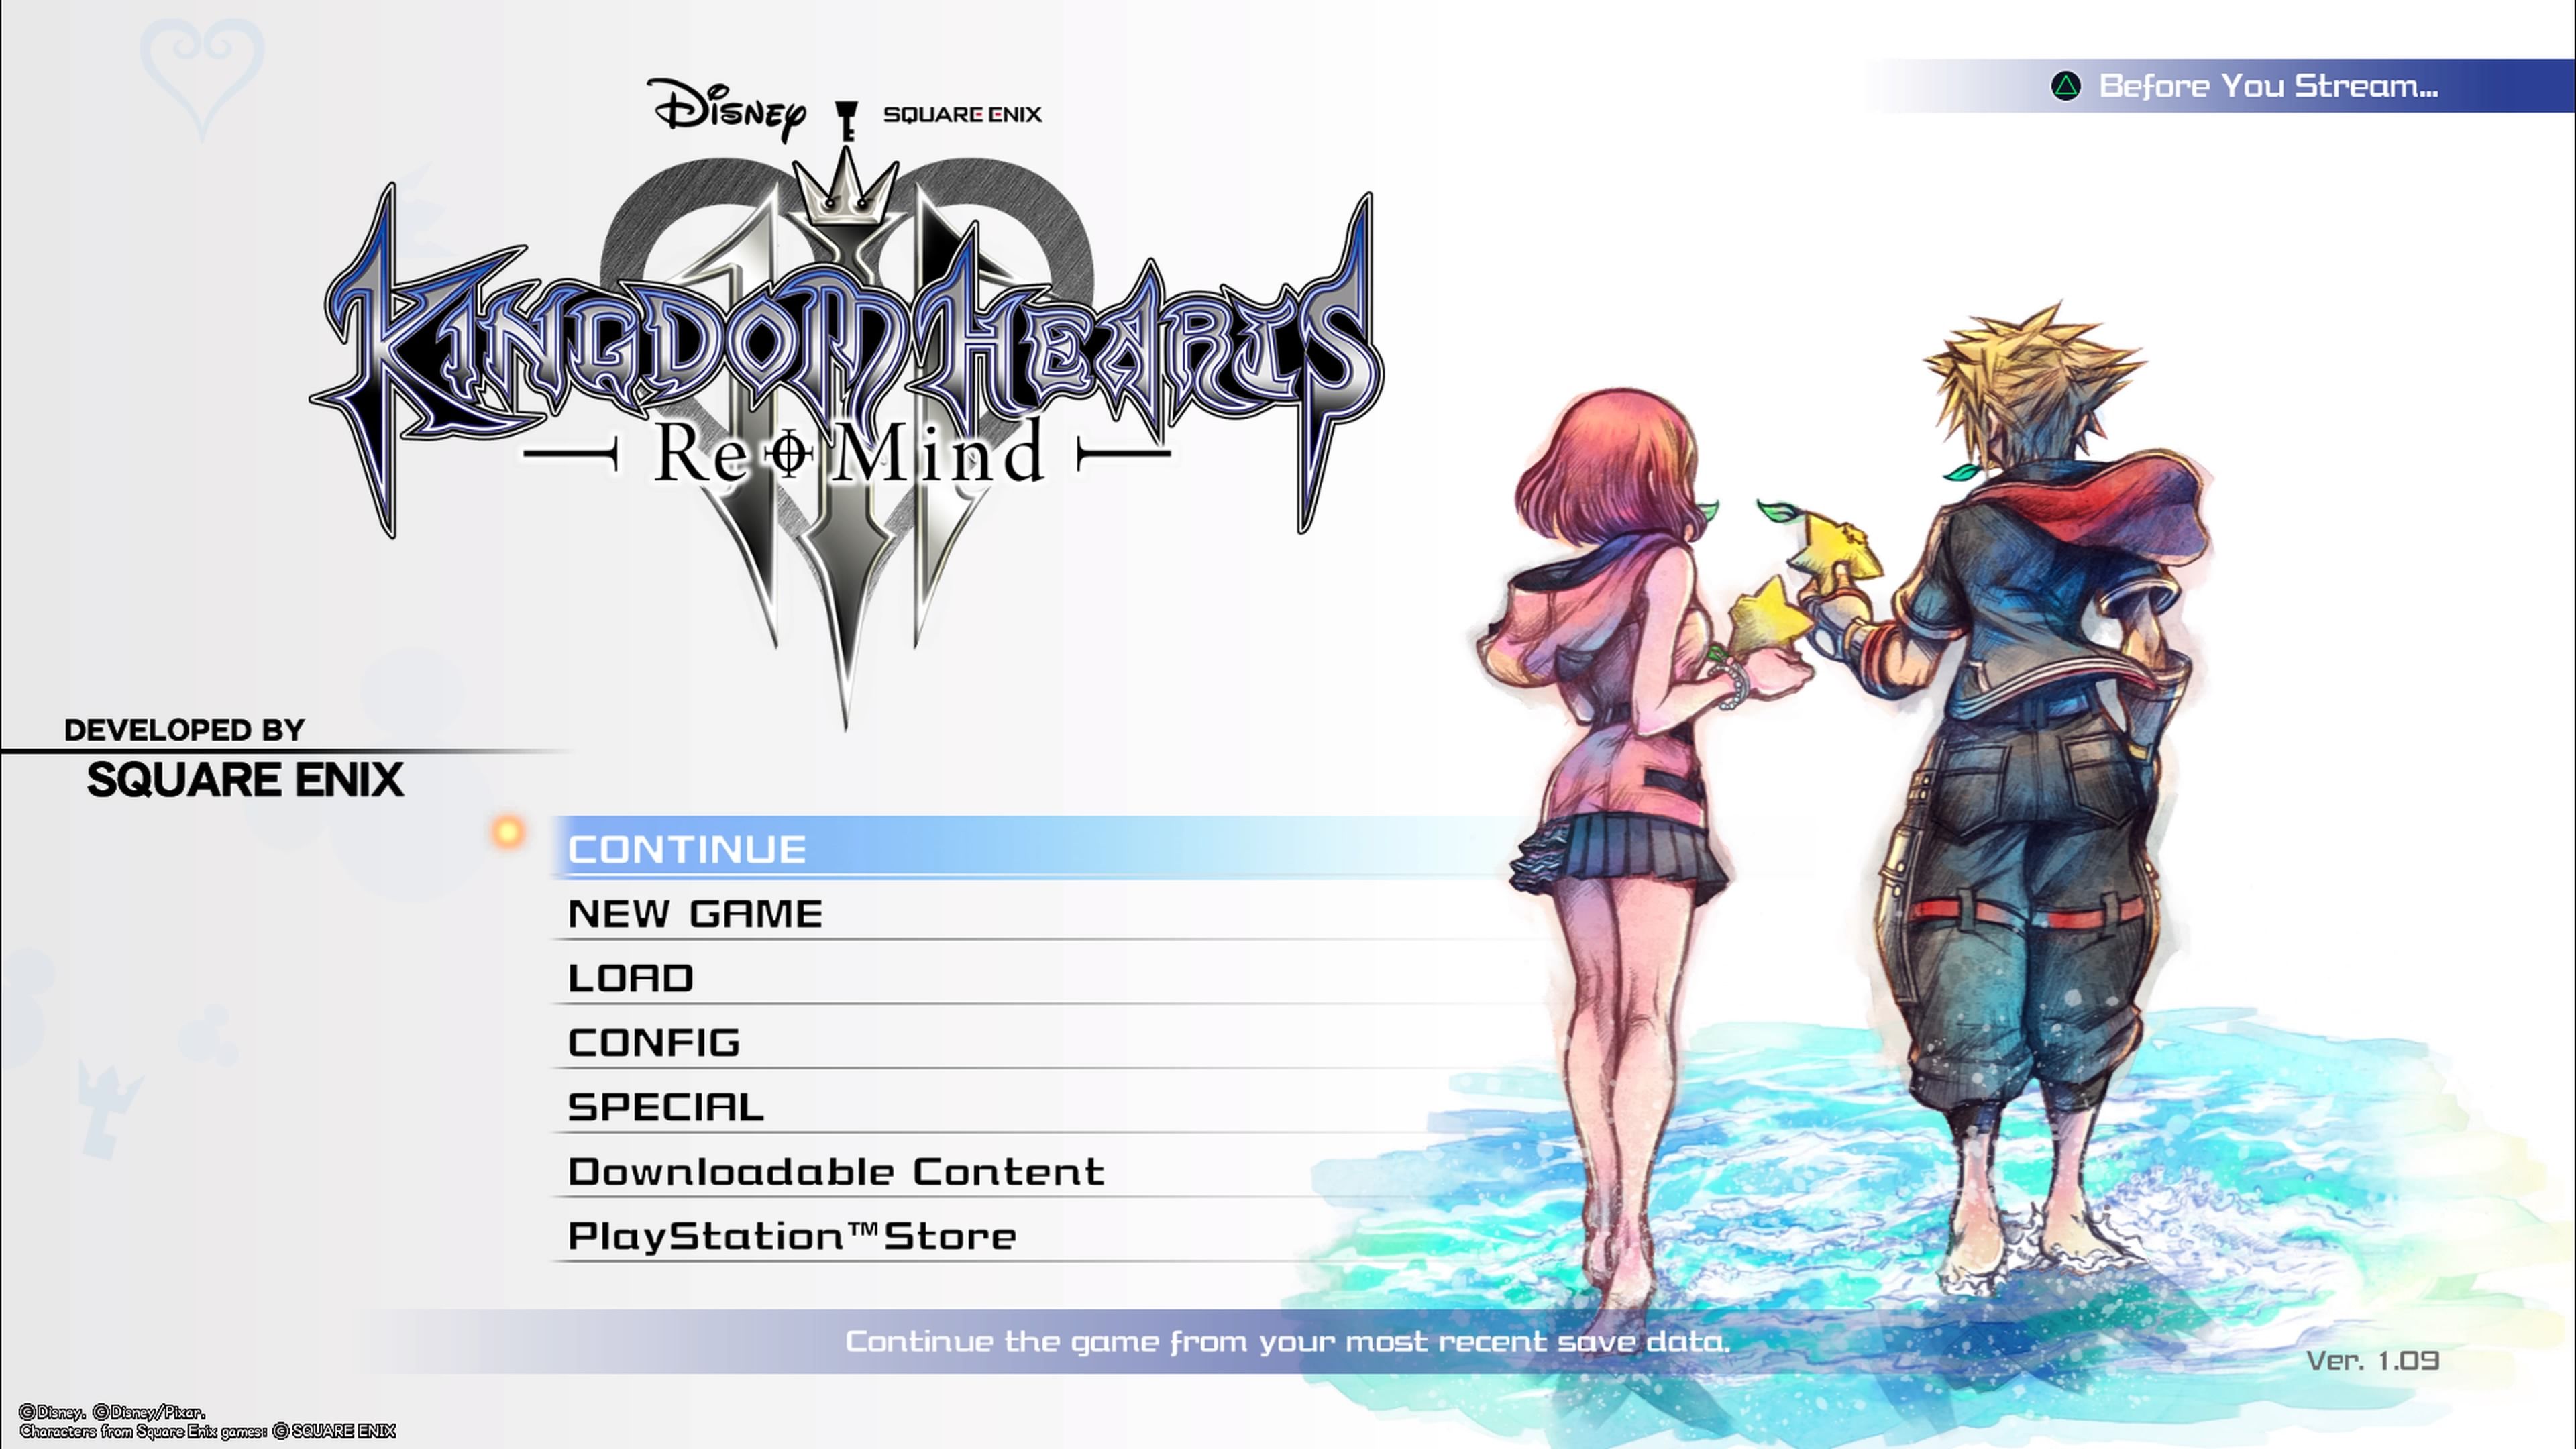 Kingdom Hearts III Re:MInd